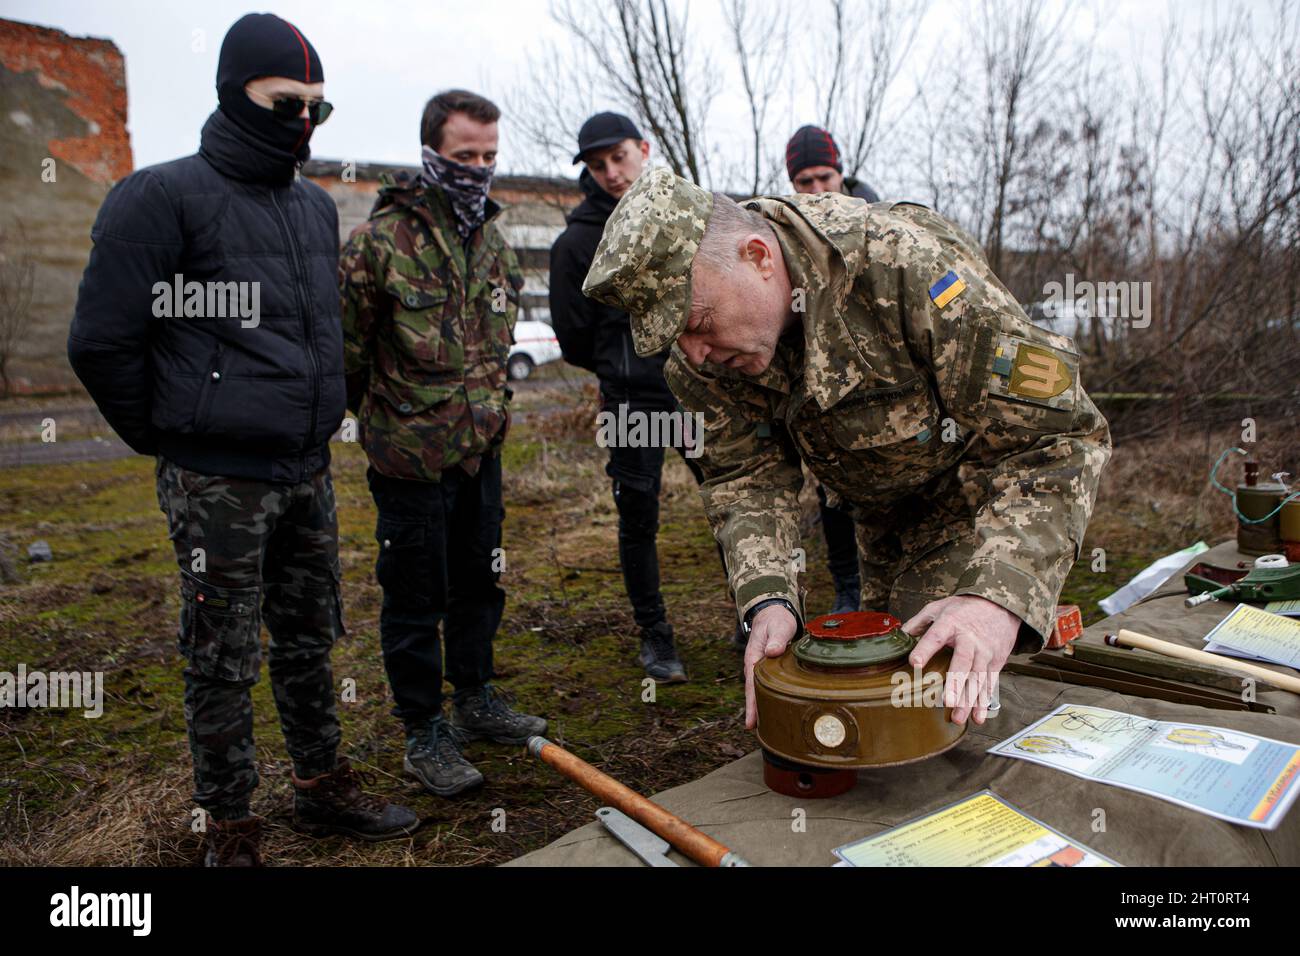 Non Exclusive: SIURTE, UKRAINE - 19. FEBRUAR 2022 - ein Ausbilder demonstriert eine Mine während einer militärischen Übung für Zivilisten, die vom Moveme durchgeführt wurde Stockfoto